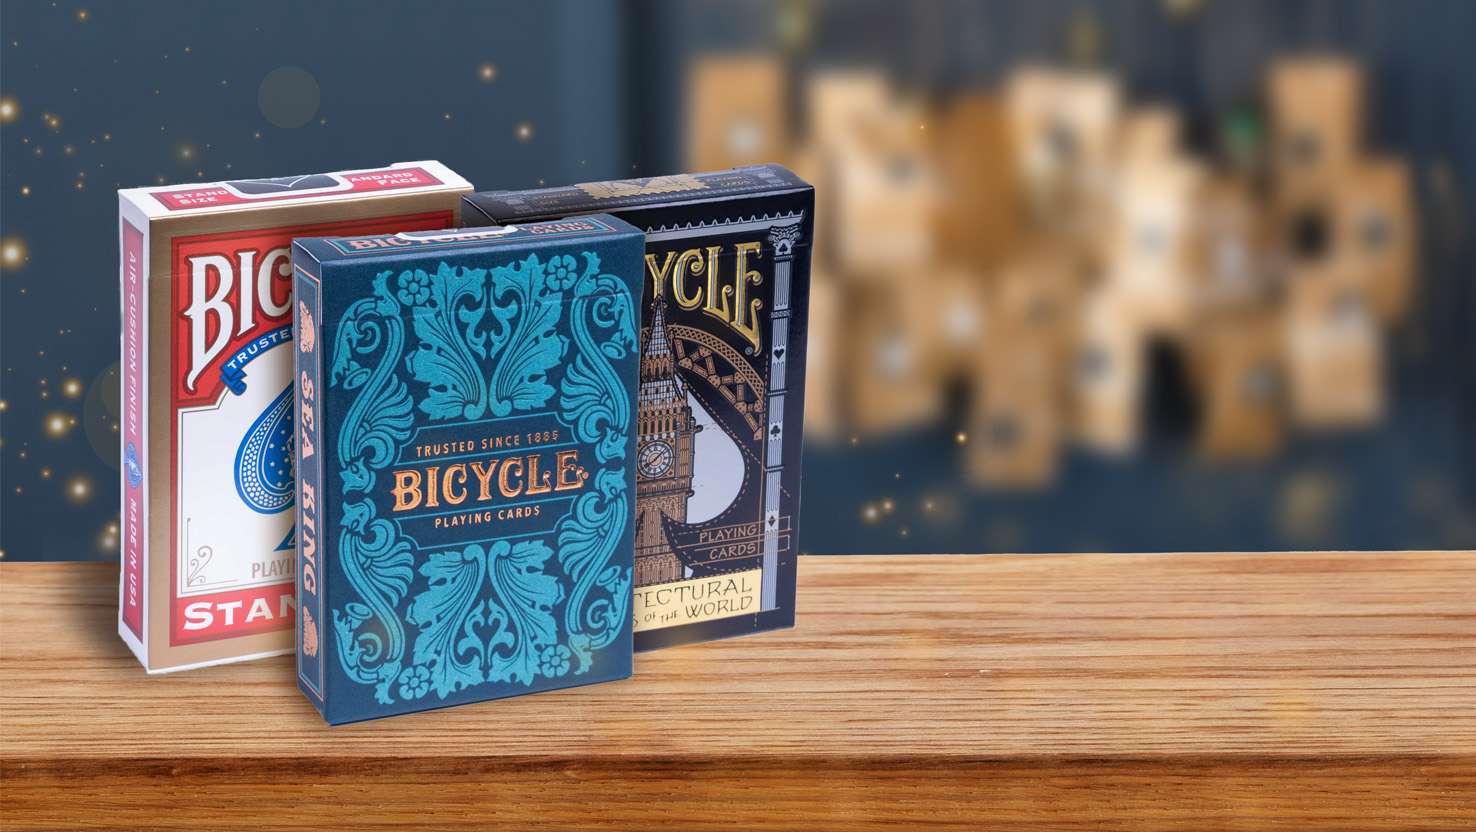 Die Bicycle Creatives Spielkarten Sea King und Architectural wonders of the world, so wie das Bicycle Originals Gold Standard Rot Deck stehen vor einem Adventskanlender auf einem Untergrund aus Holz und eignen sich hervorragend dazu einen Adventskalender selbst zu befüllen.